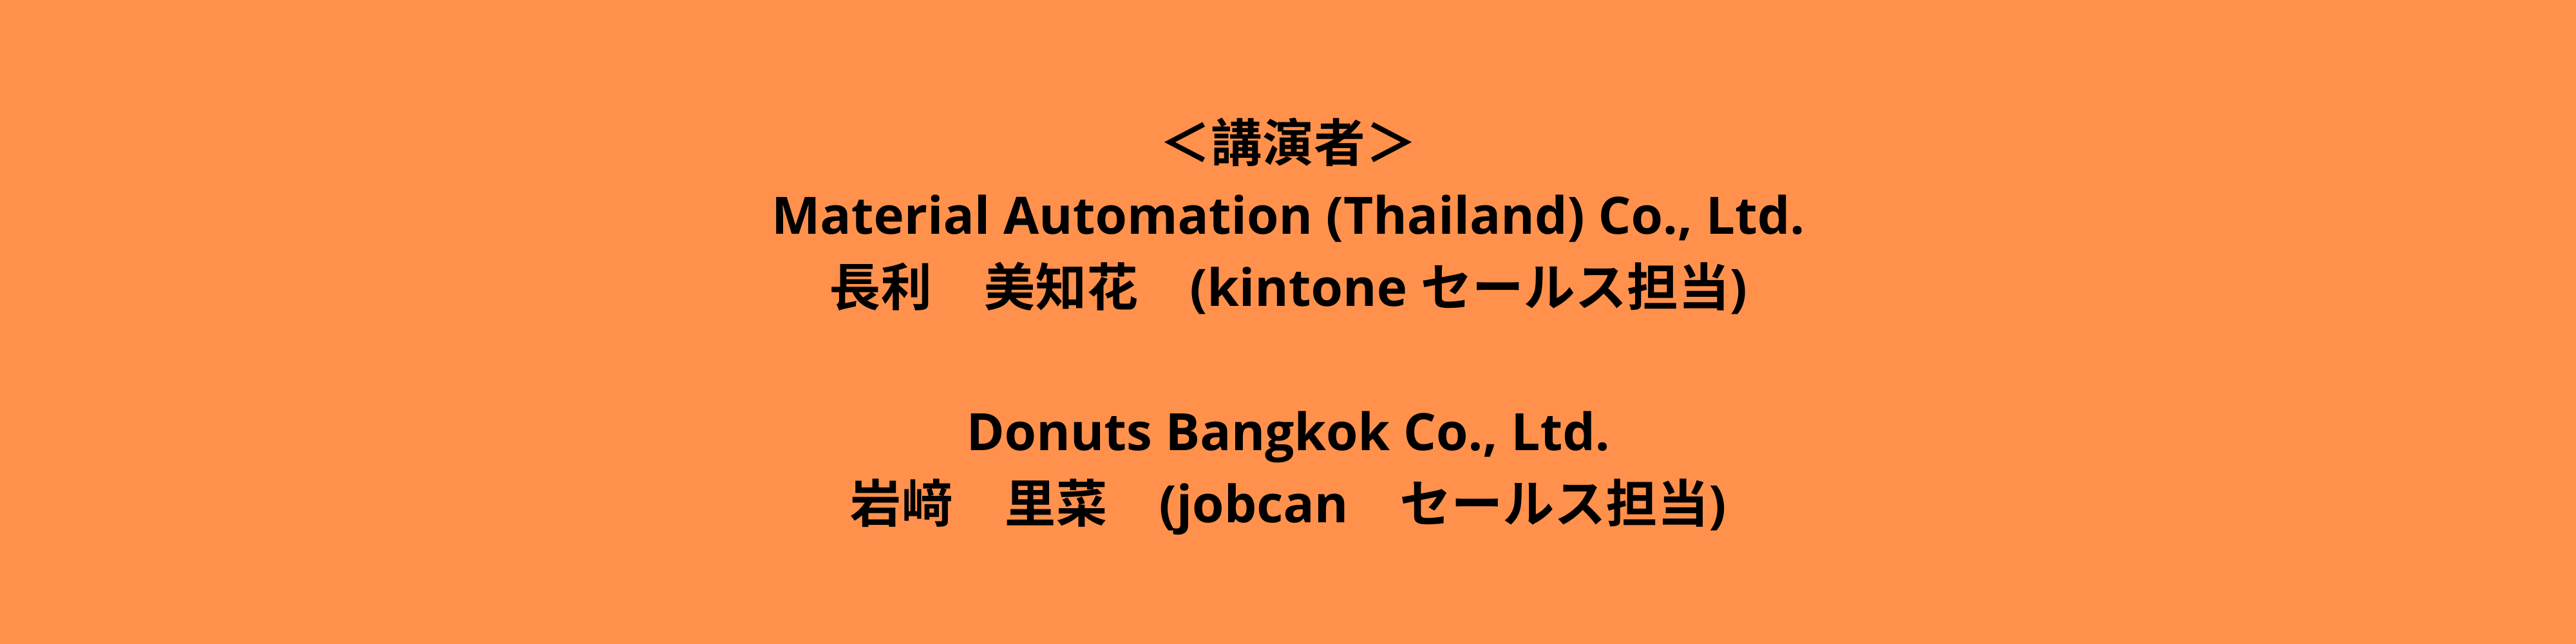 ＜講演者＞ Material Automation (Thailand) Co., Ltd. 長利 美知花 (Kintone セールス担当) ＜主催者＞ Donuts Bangkok Co., Ltd. 岩﨑 里菜 (jobcan セールス担当) (3)